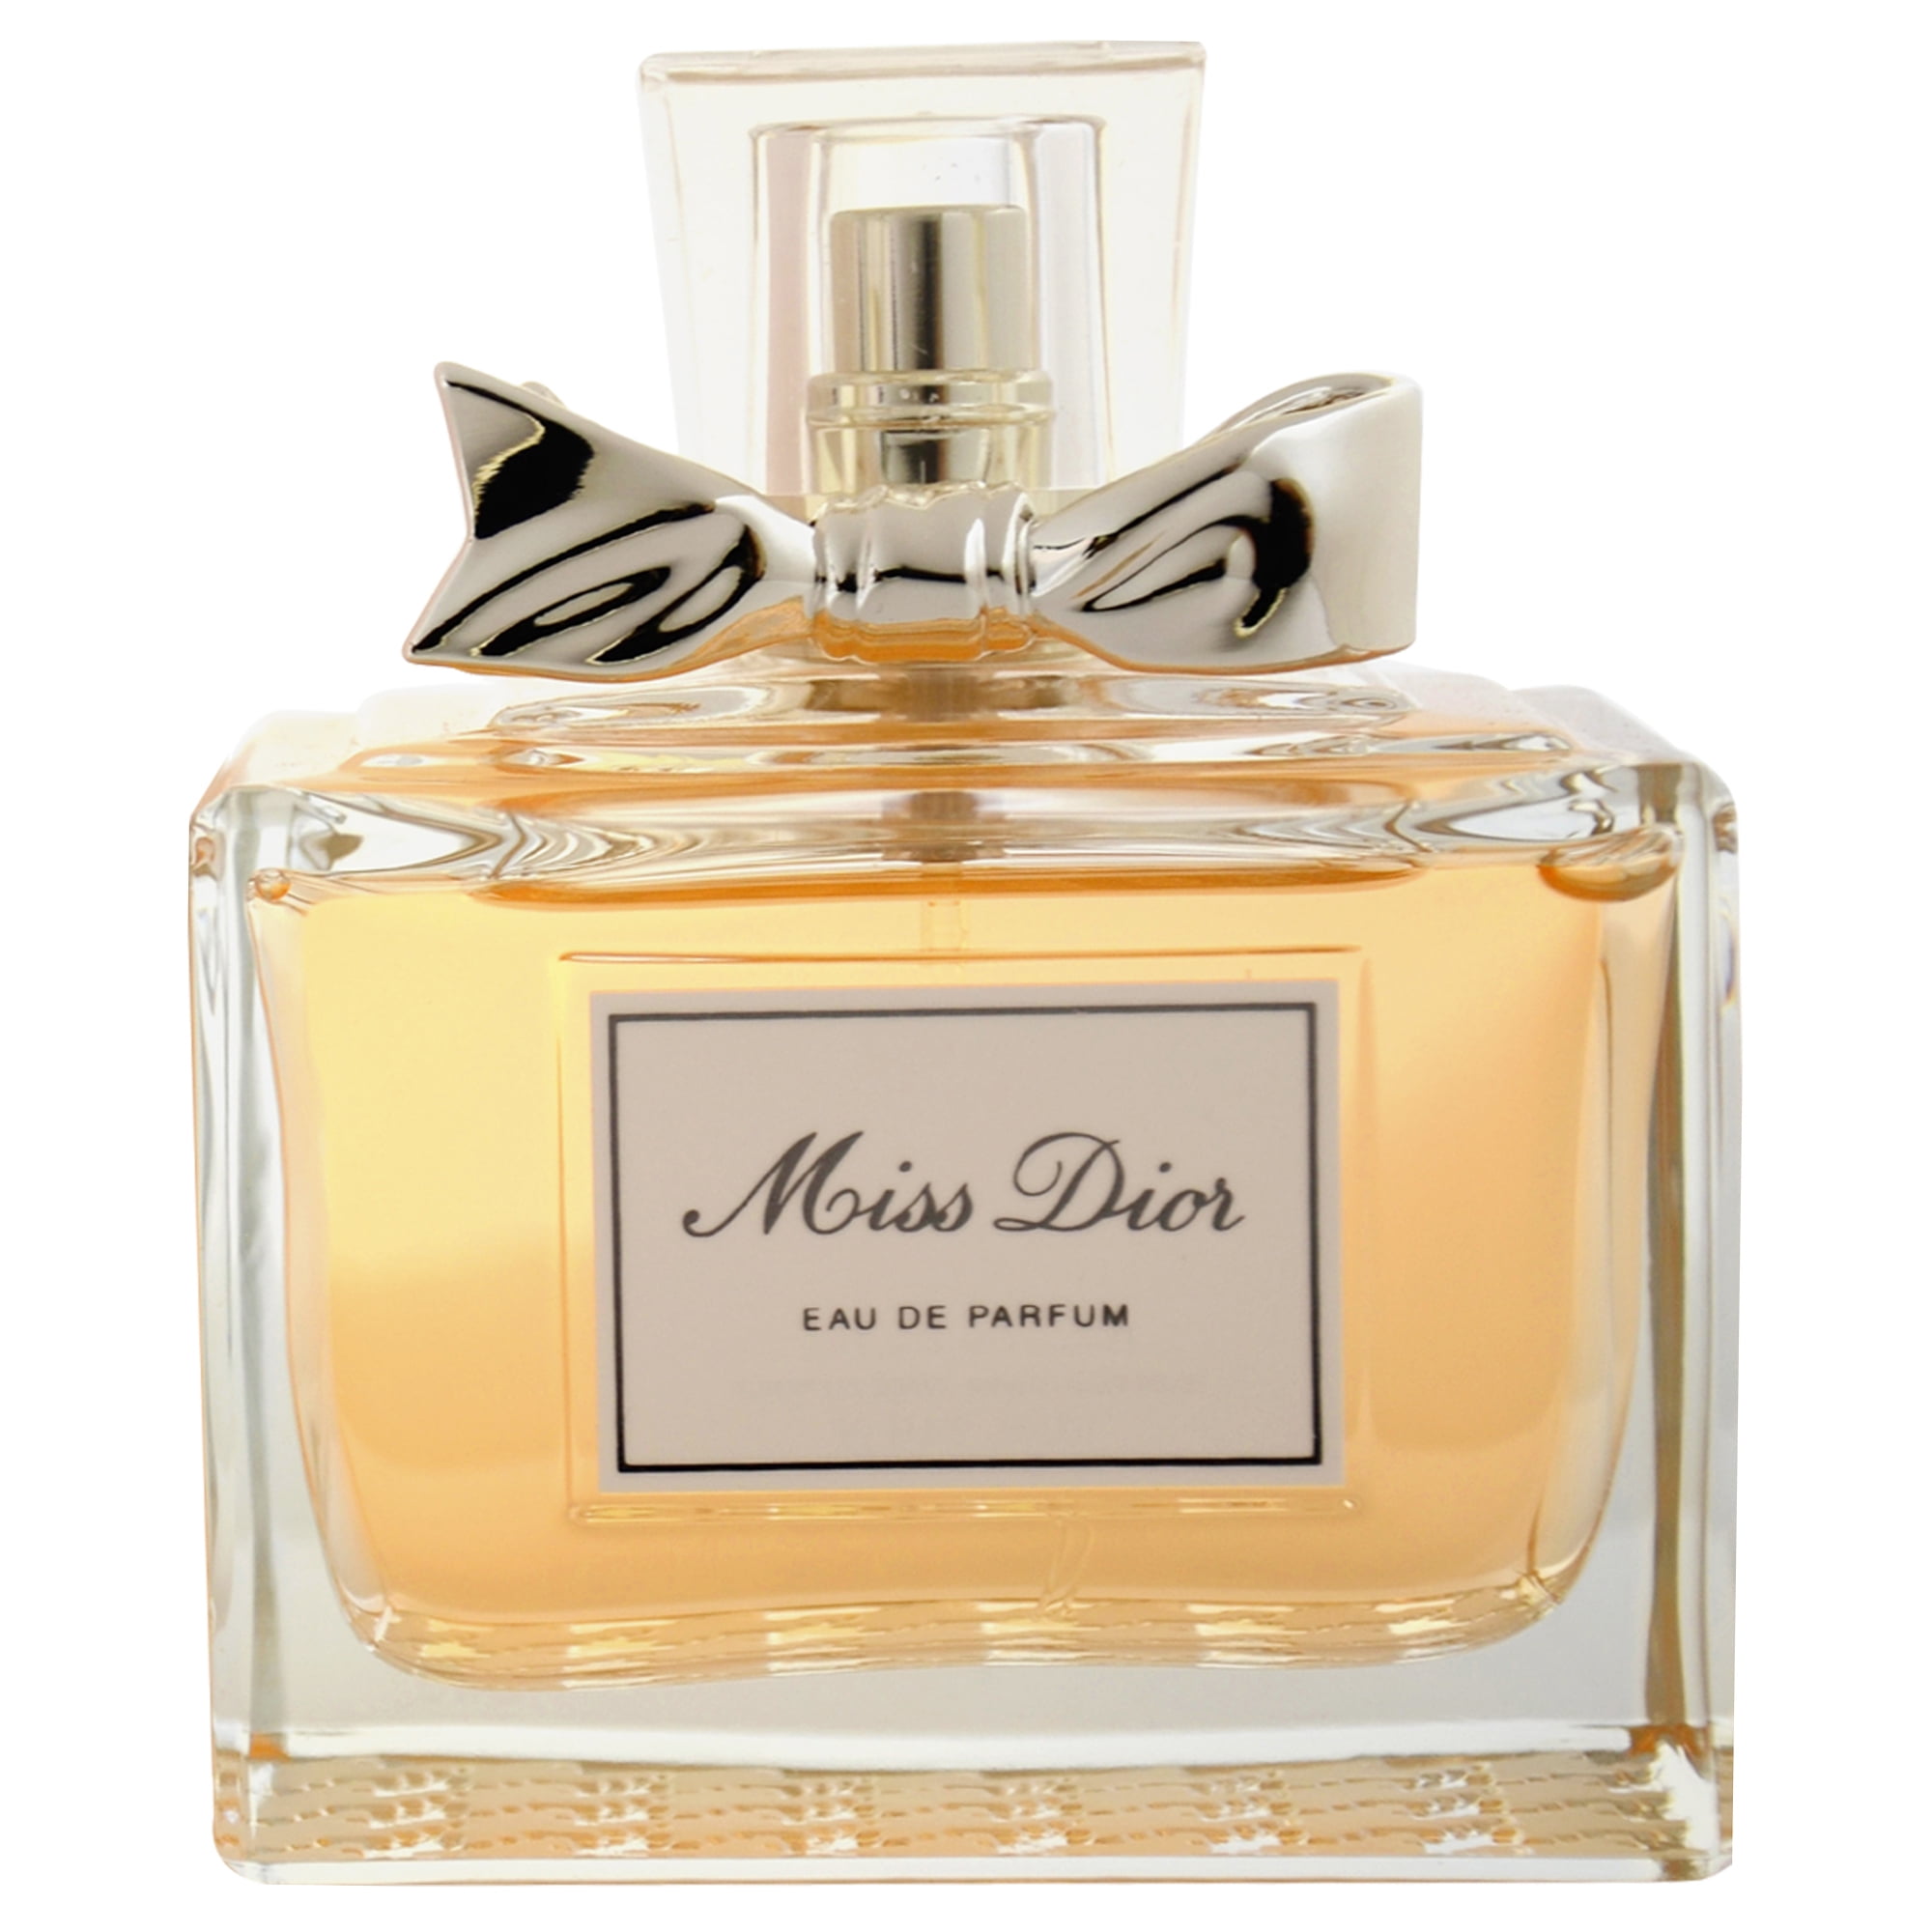 Hoofdkwartier reflecteren Duwen Miss Dior Eau de Parfum Spray, 3.4 oz. - Walmart.com